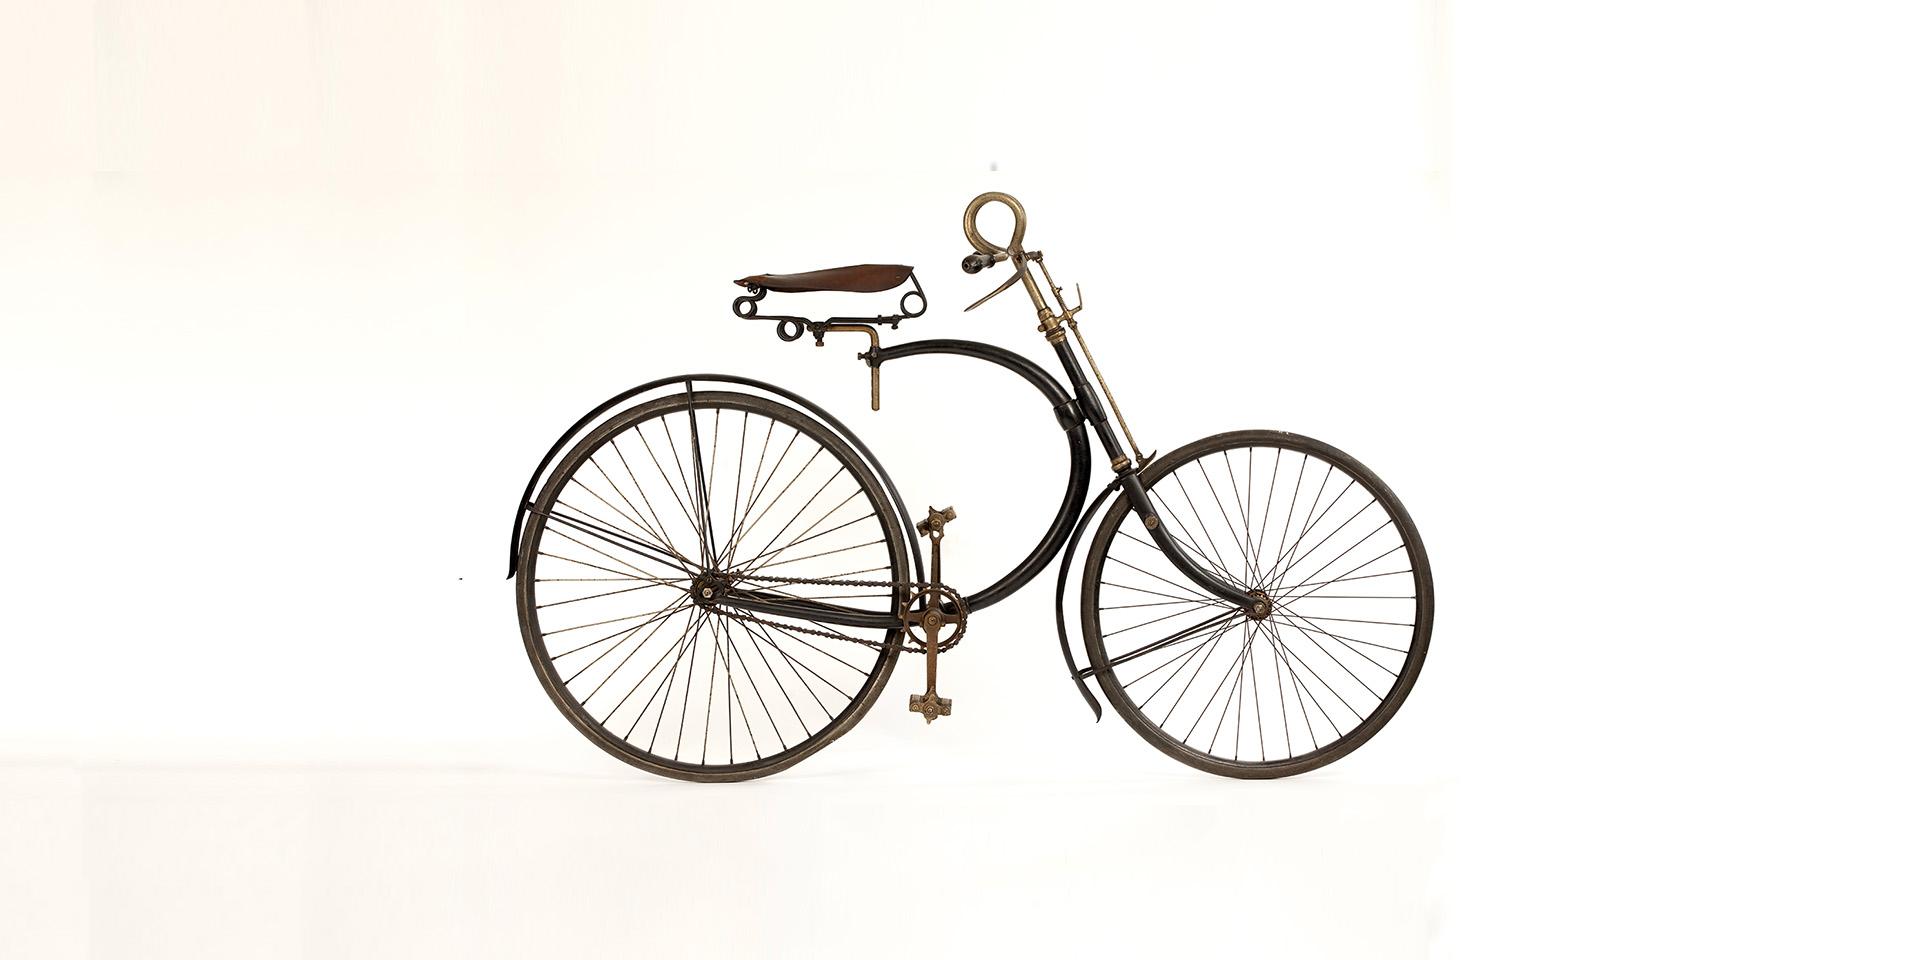 Manufrance, Hirondelle Superb, 1889, fully suspended bicycle with air-filled tyres, collection du musée d‘art et d‘industrie de la ville de Saint-Etienne © photo d‘Hubert Genouilhac